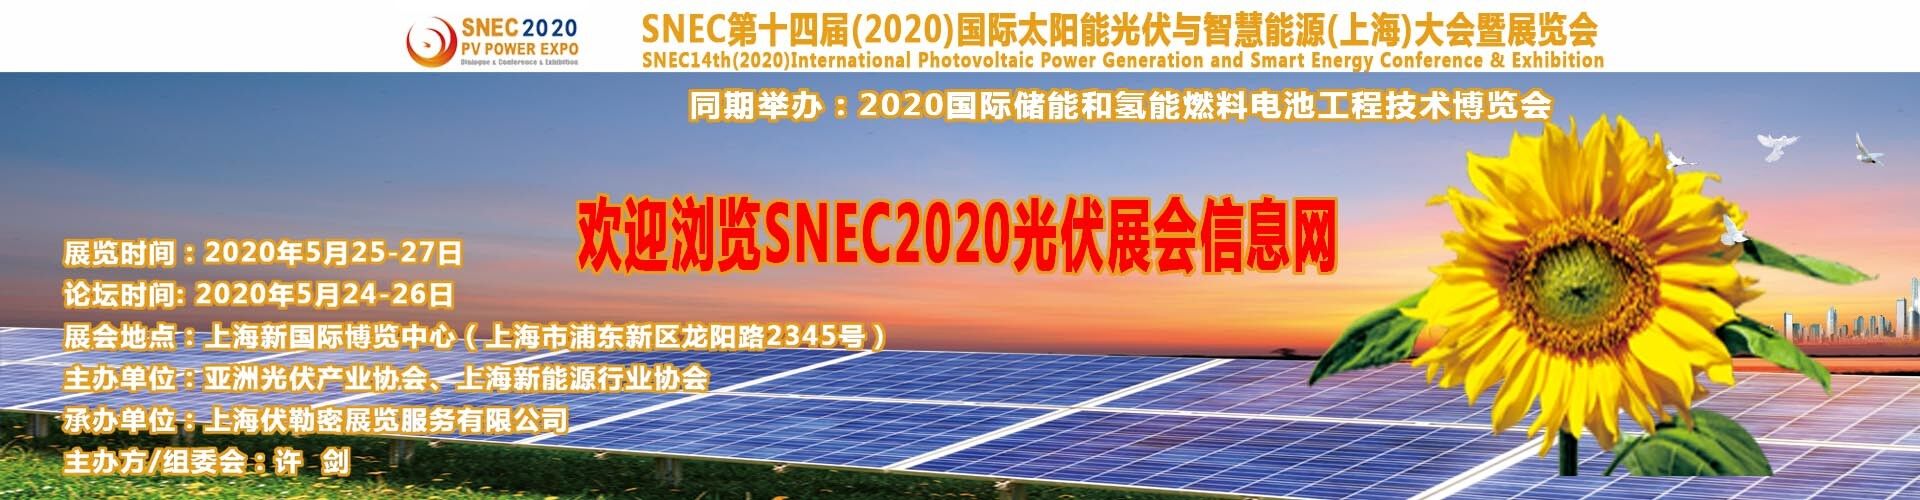 SNEC2018年太陽能光伏展會暨高峰論壇